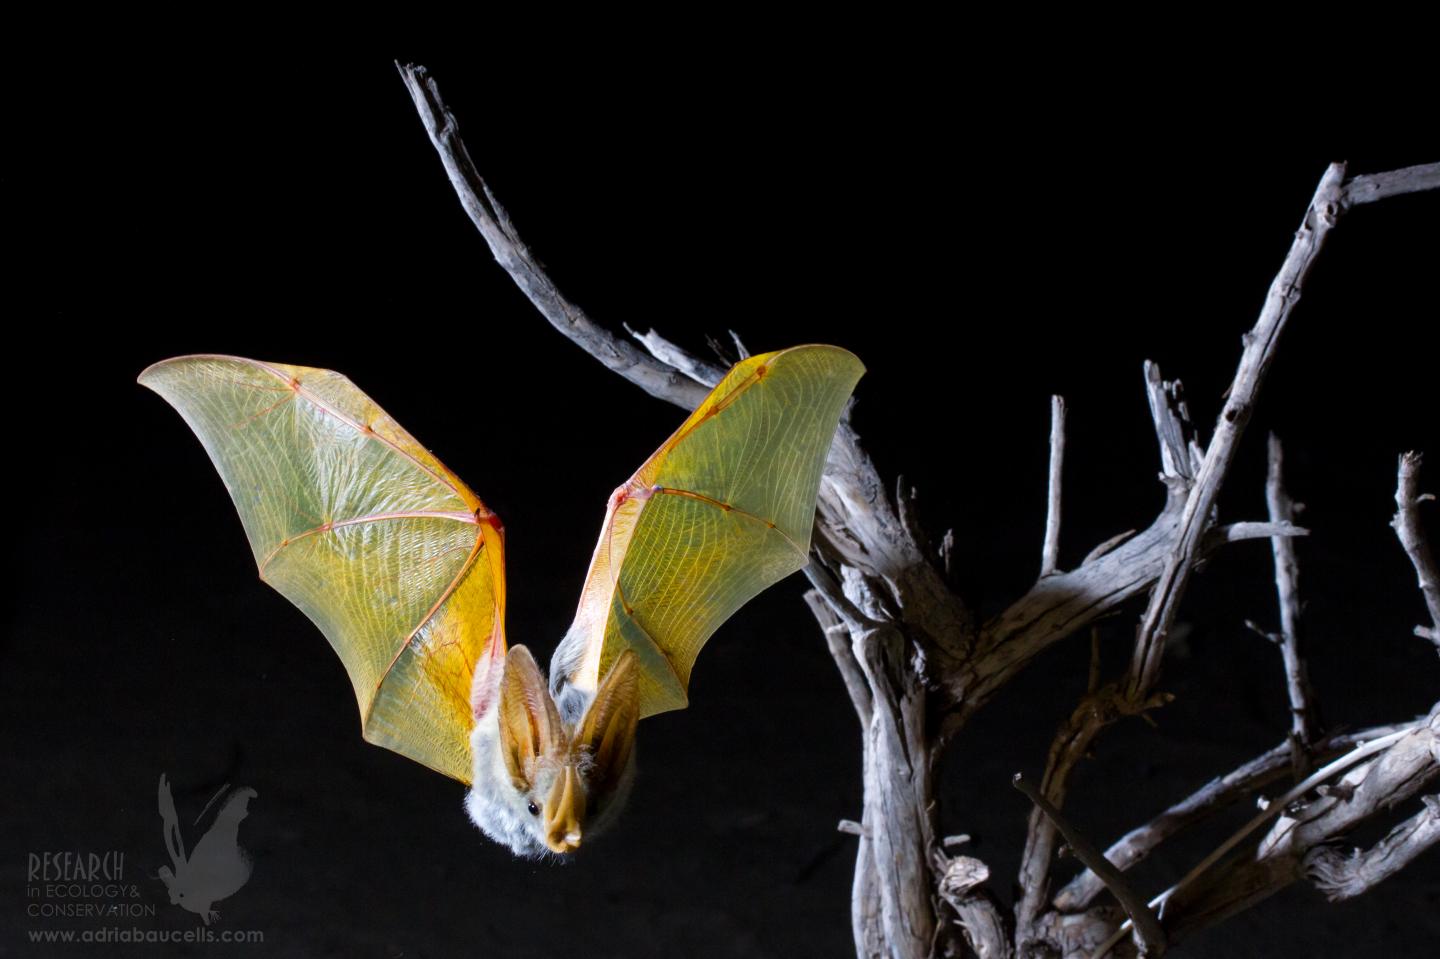 Small GPS backpacks reveal the secret life of desert bats